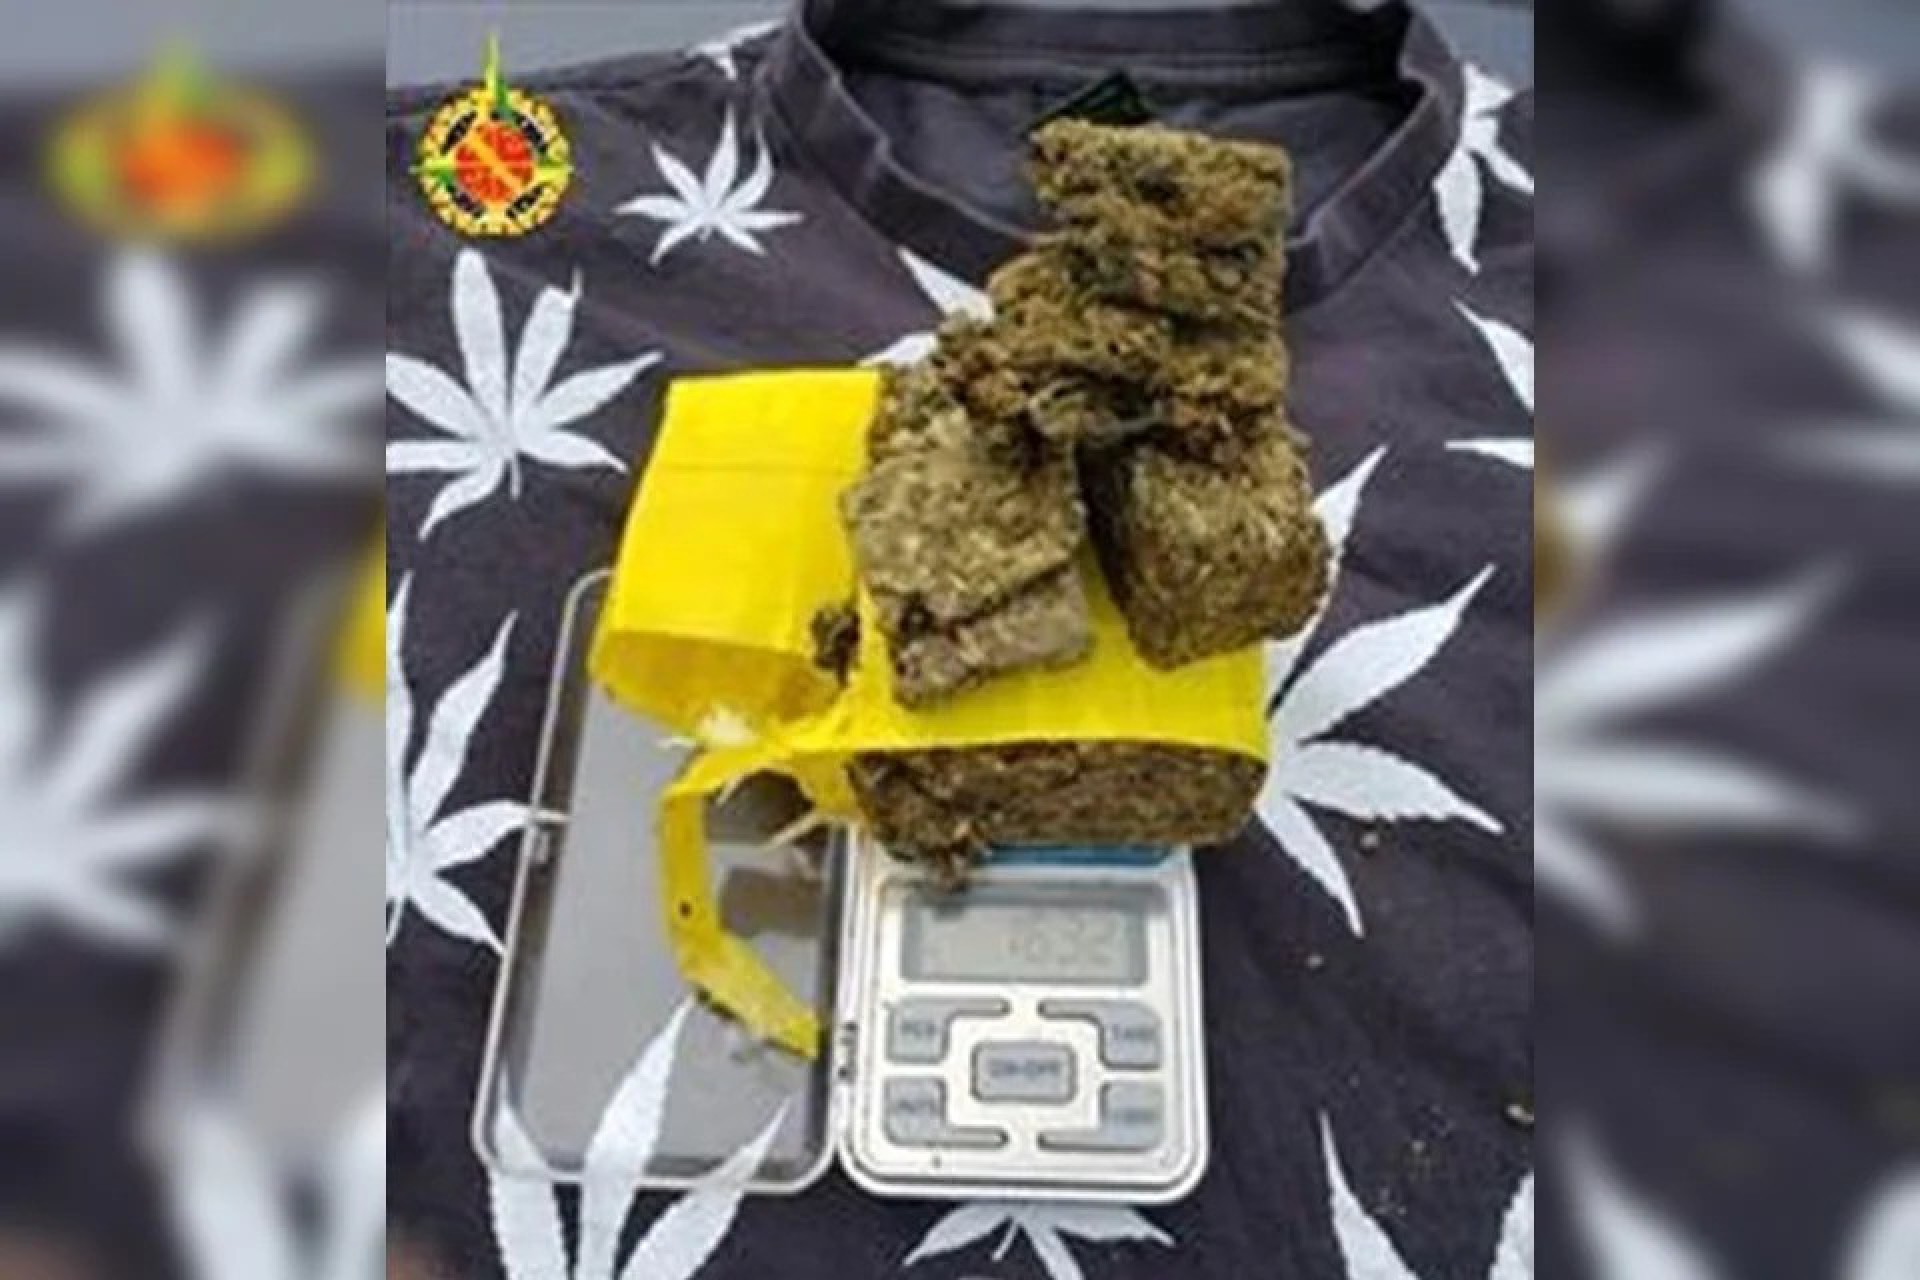 Policiais chegaram até o homem depois de ele ter postado uma foto da droga nas redes sociais - Divulgação/PMDF